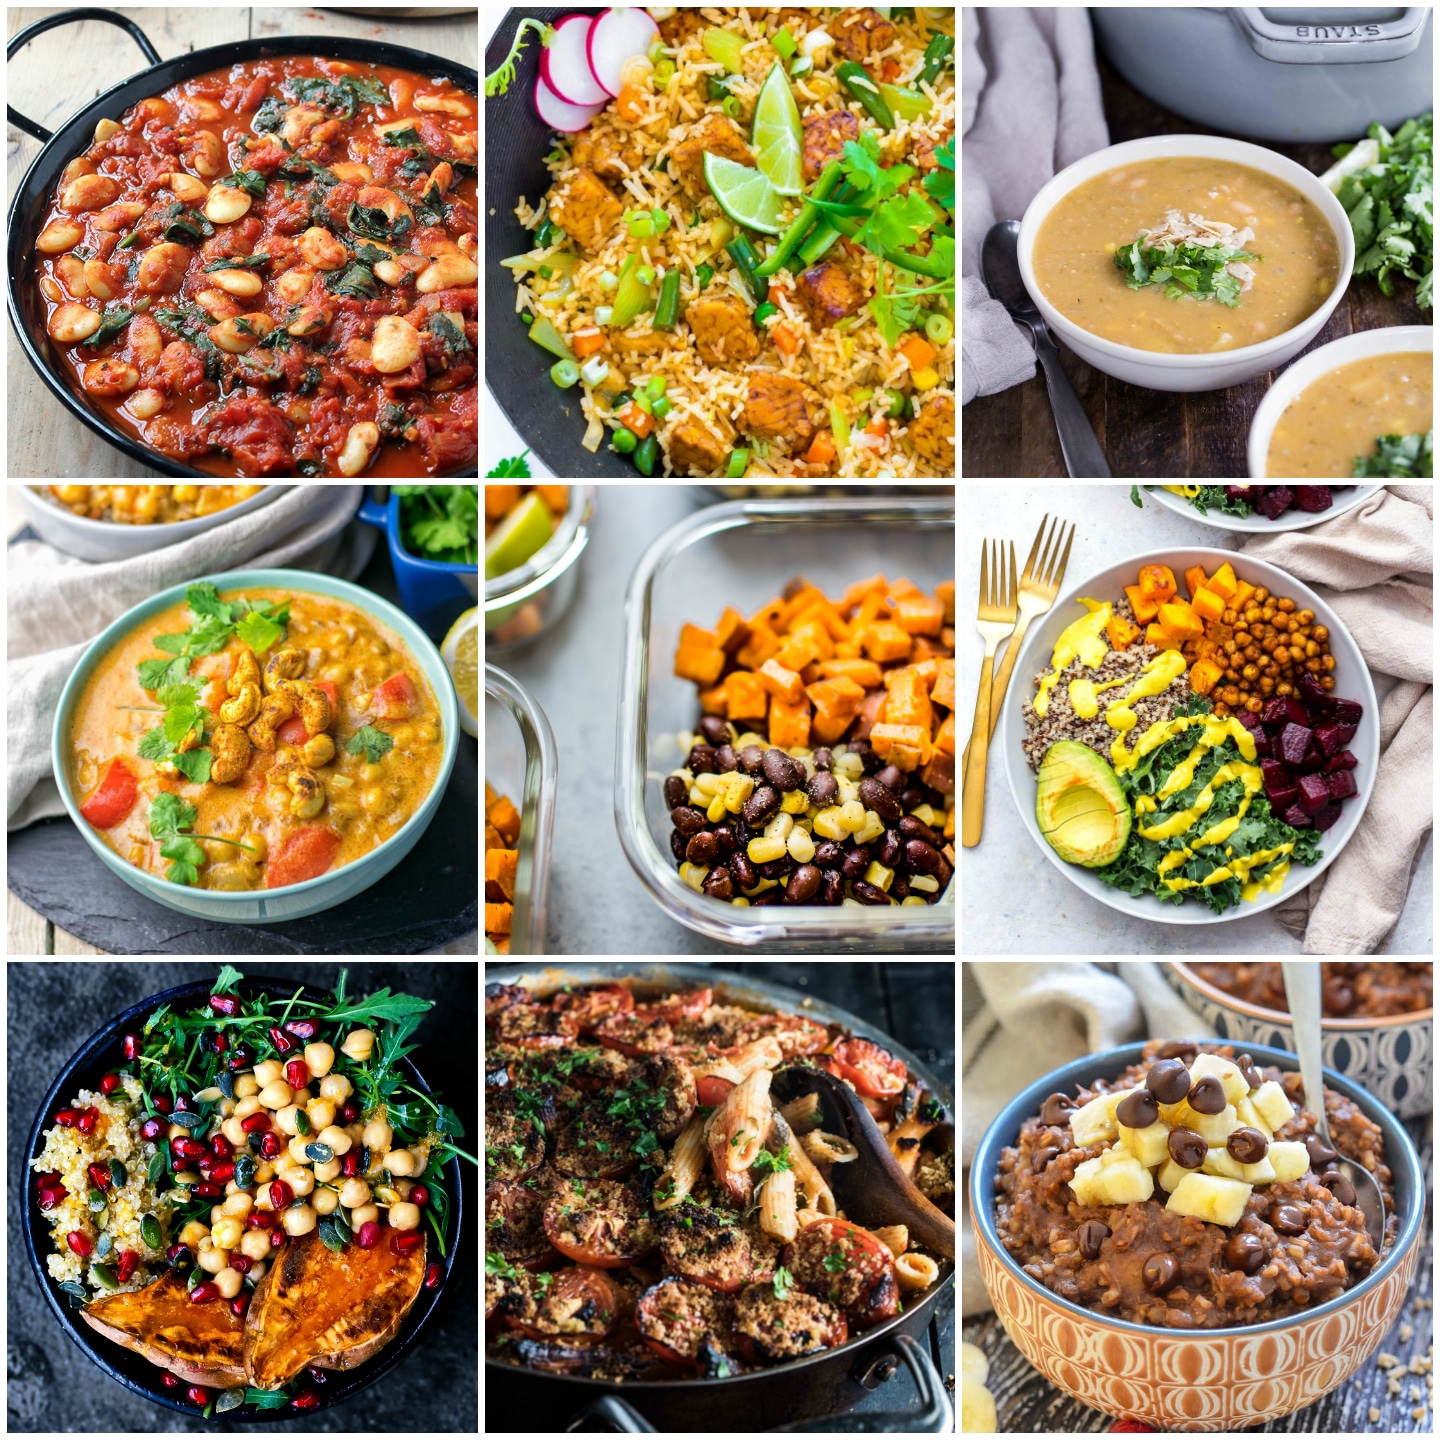 https://www.saltandlavender.com/wp-content/uploads/2018/05/vegan-meal-prep-collage.jpg